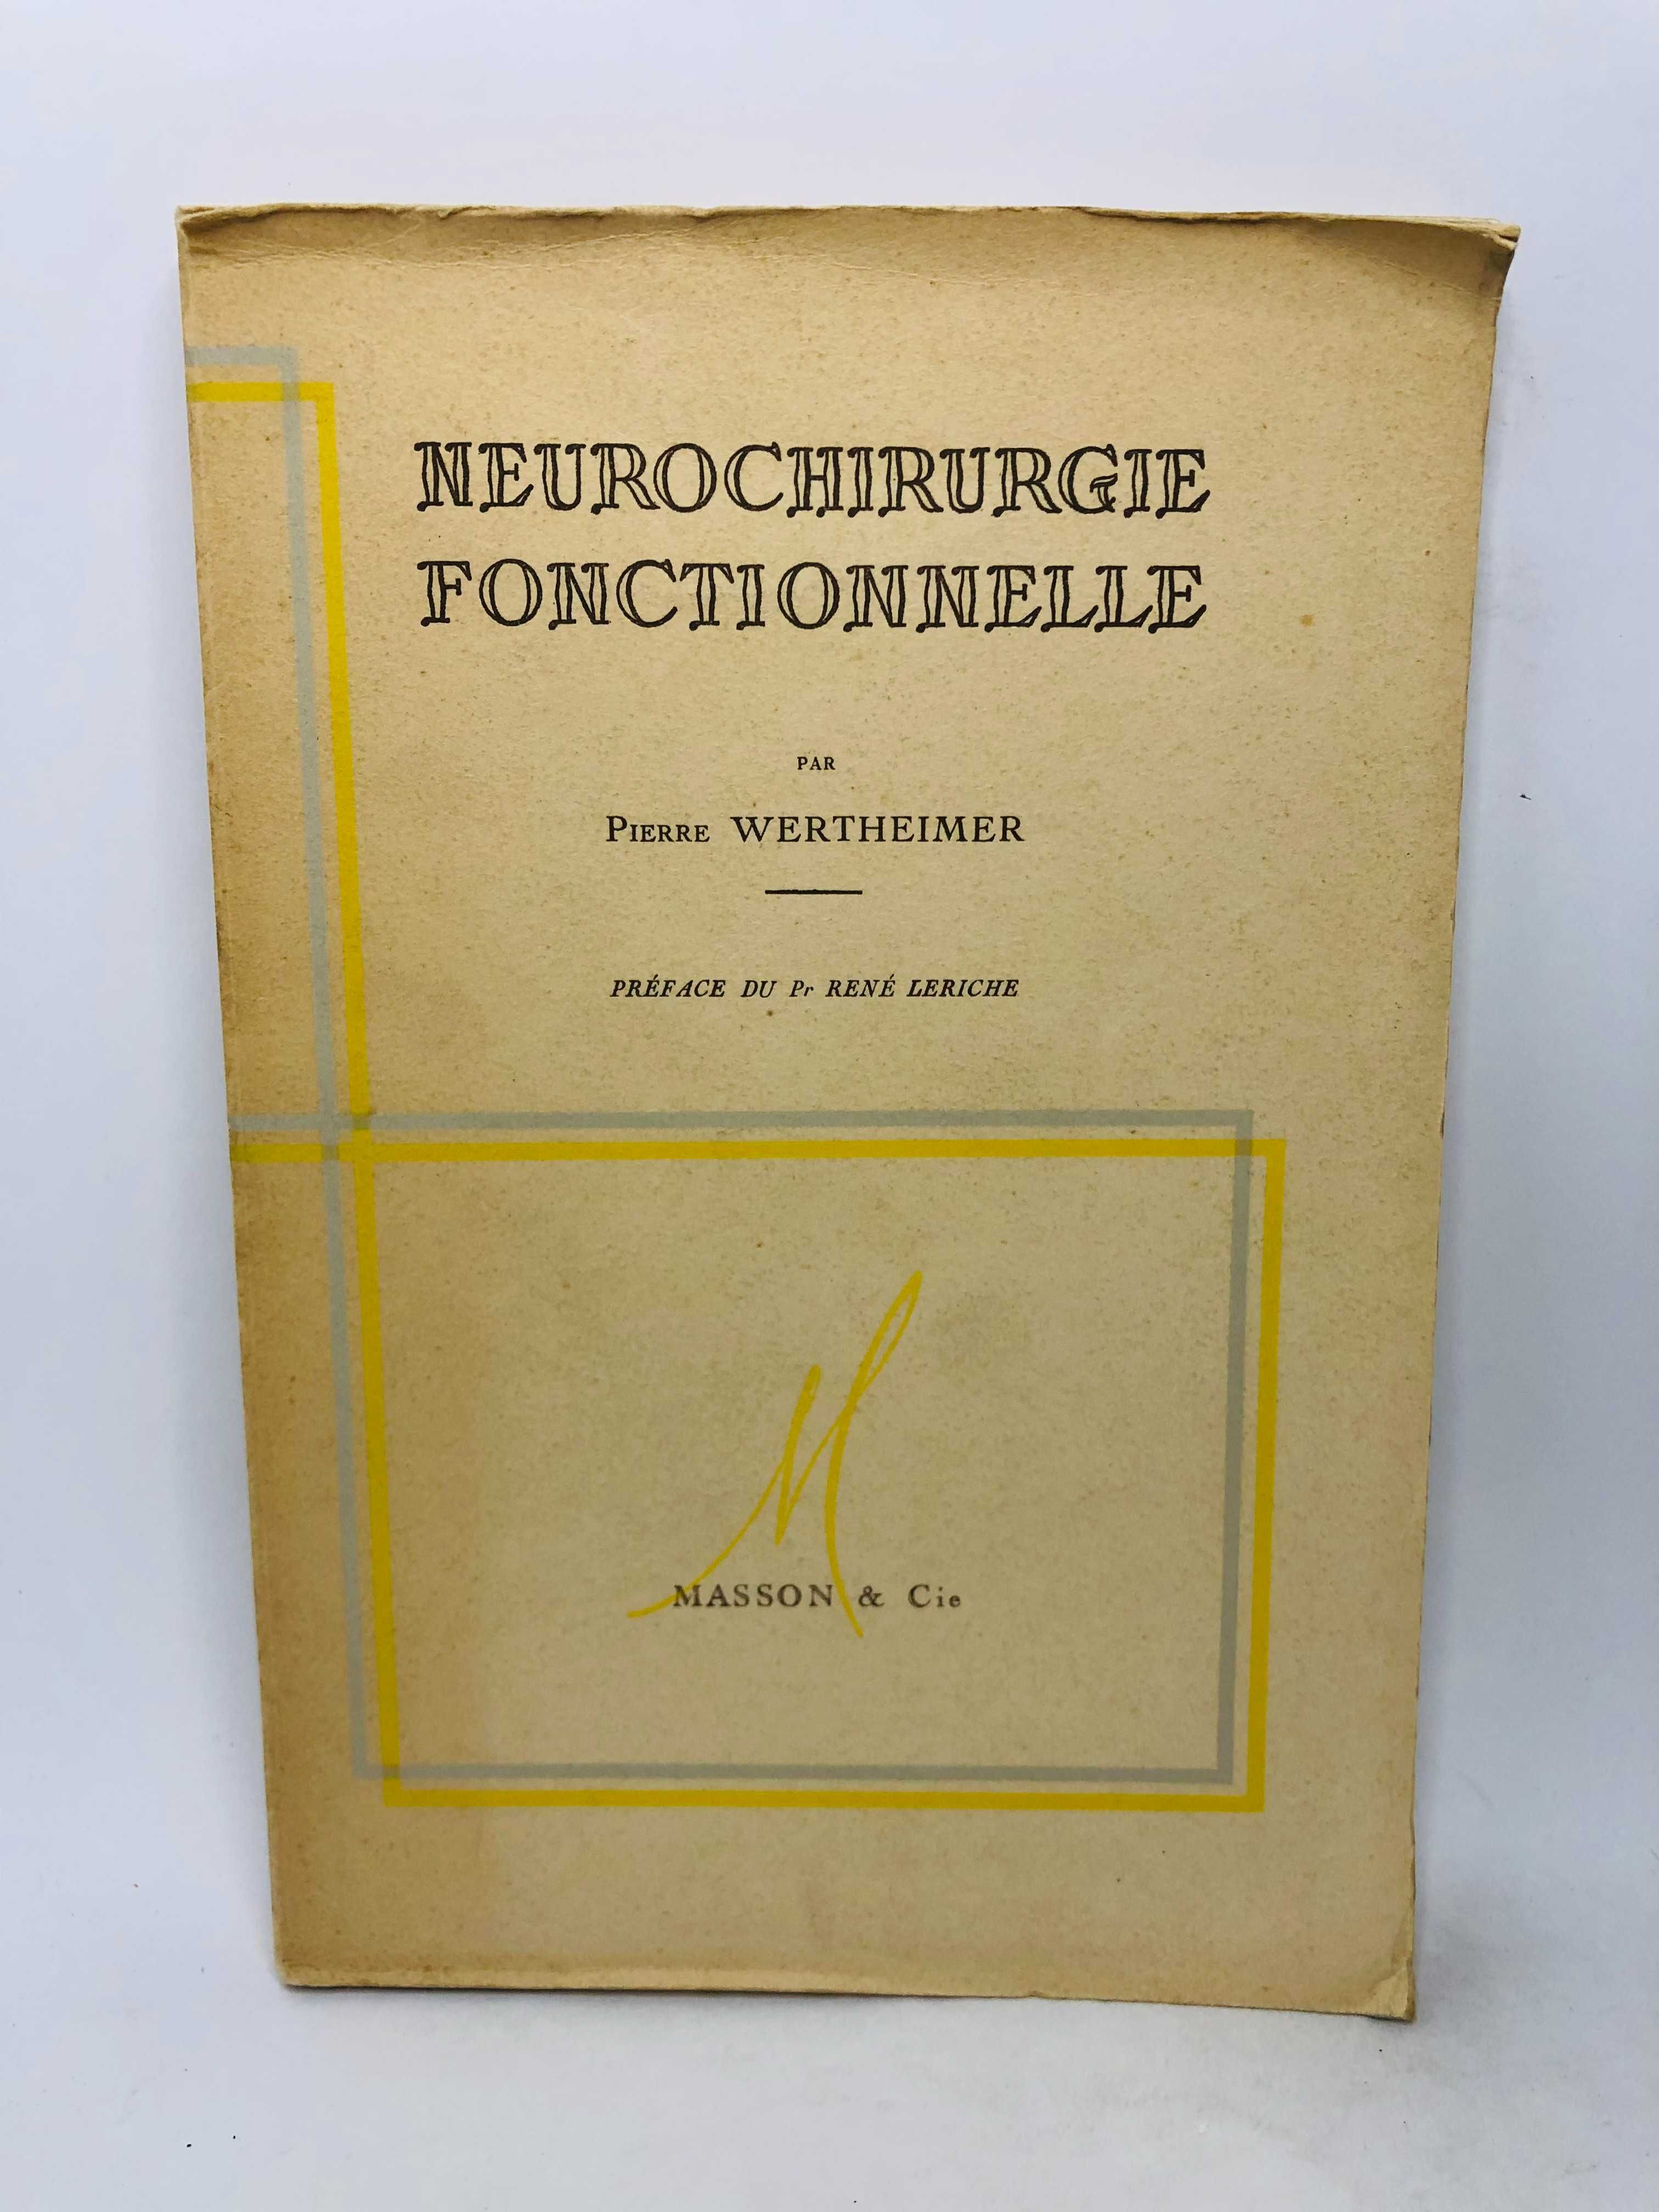 Neurochirurgie Fonctionnelle - Pierre Wertheimer